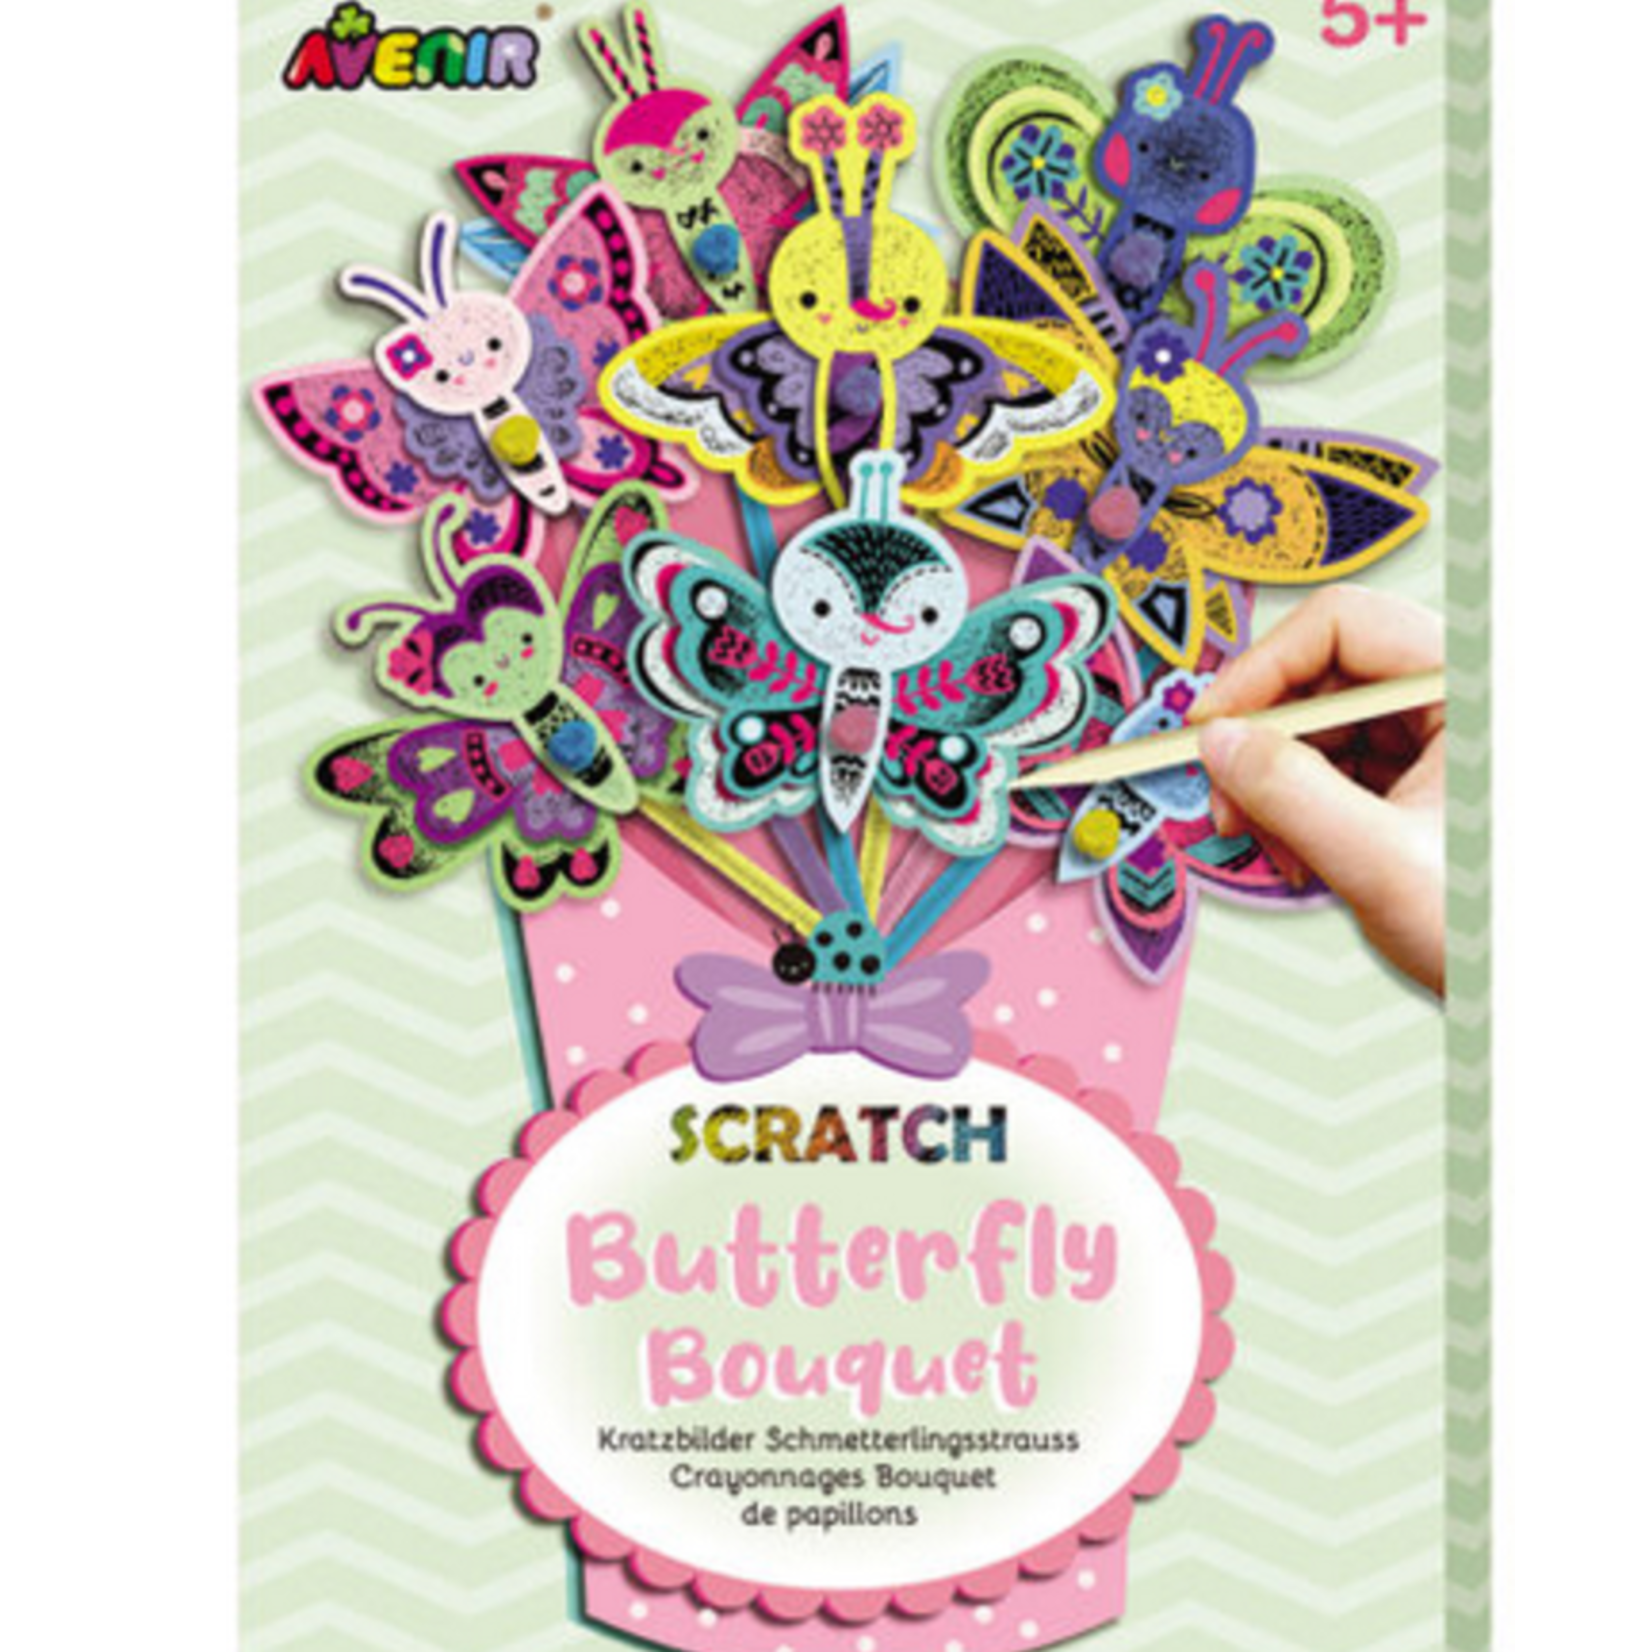 Avenir Scratch bouquet - butterfly